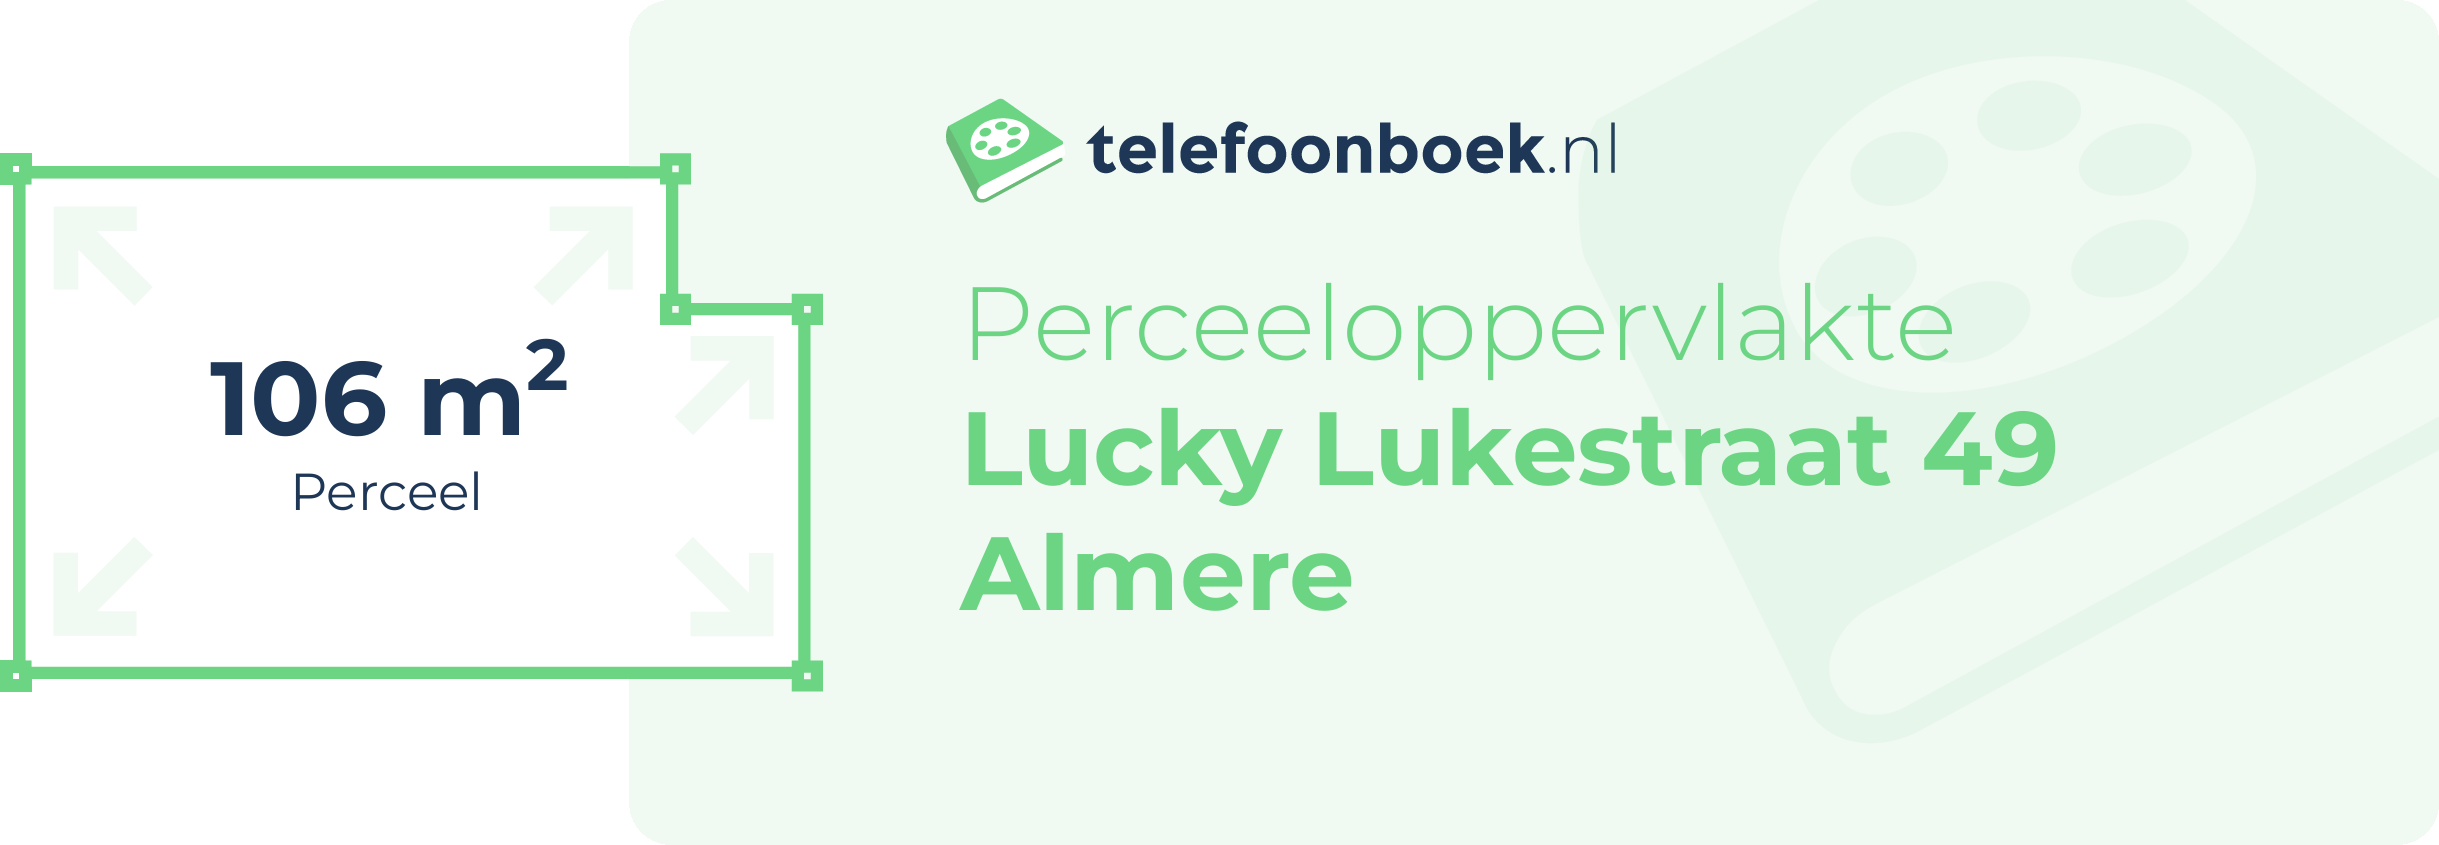 Perceeloppervlakte Lucky Lukestraat 49 Almere